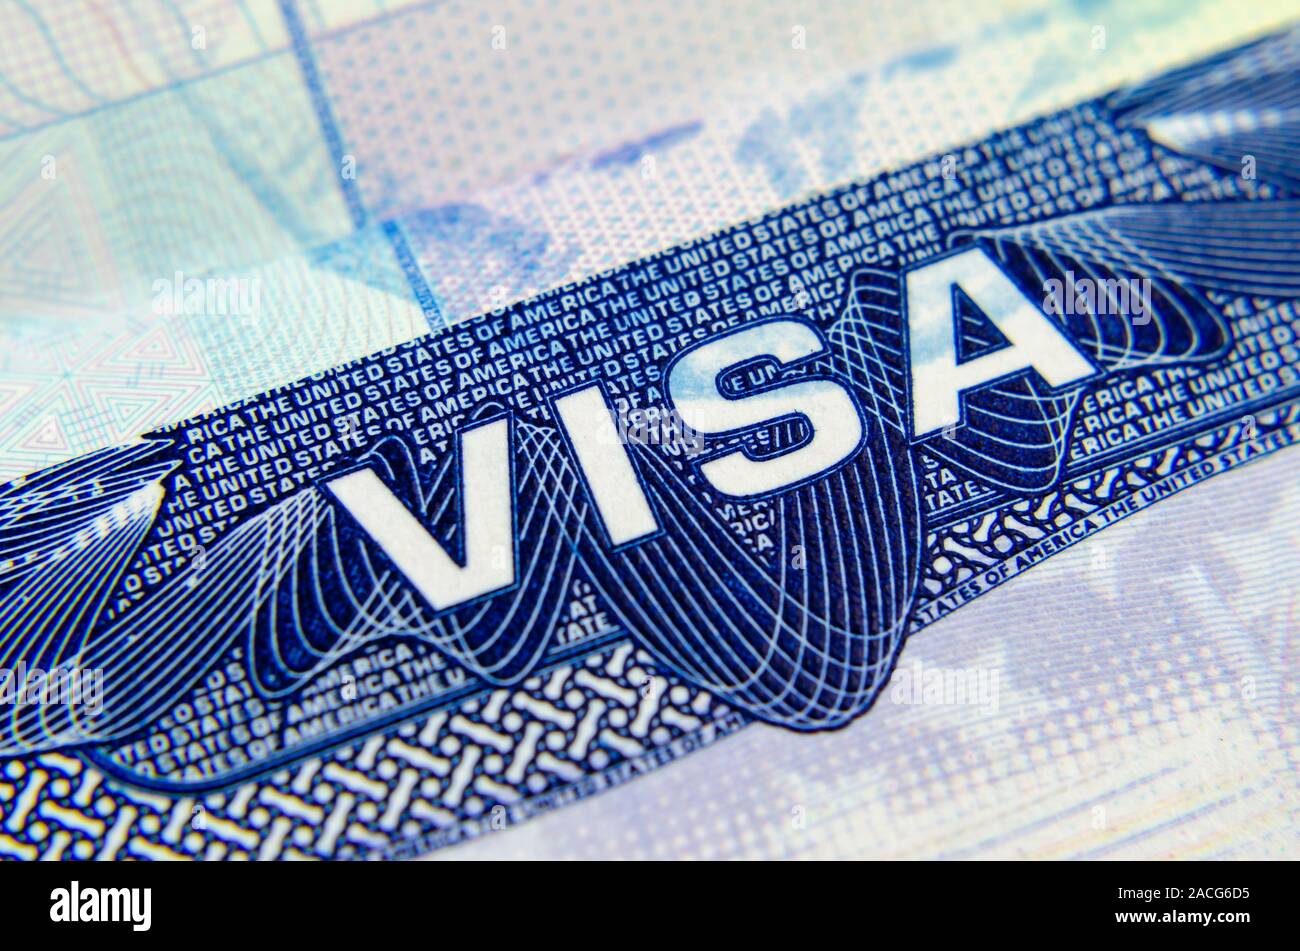 Foto macro di noi vignetta visto in un passaporto. La B1/B2 visa consente di entrare negli Stati Uniti d'America per il business / piacere, turismo. Foto Stock